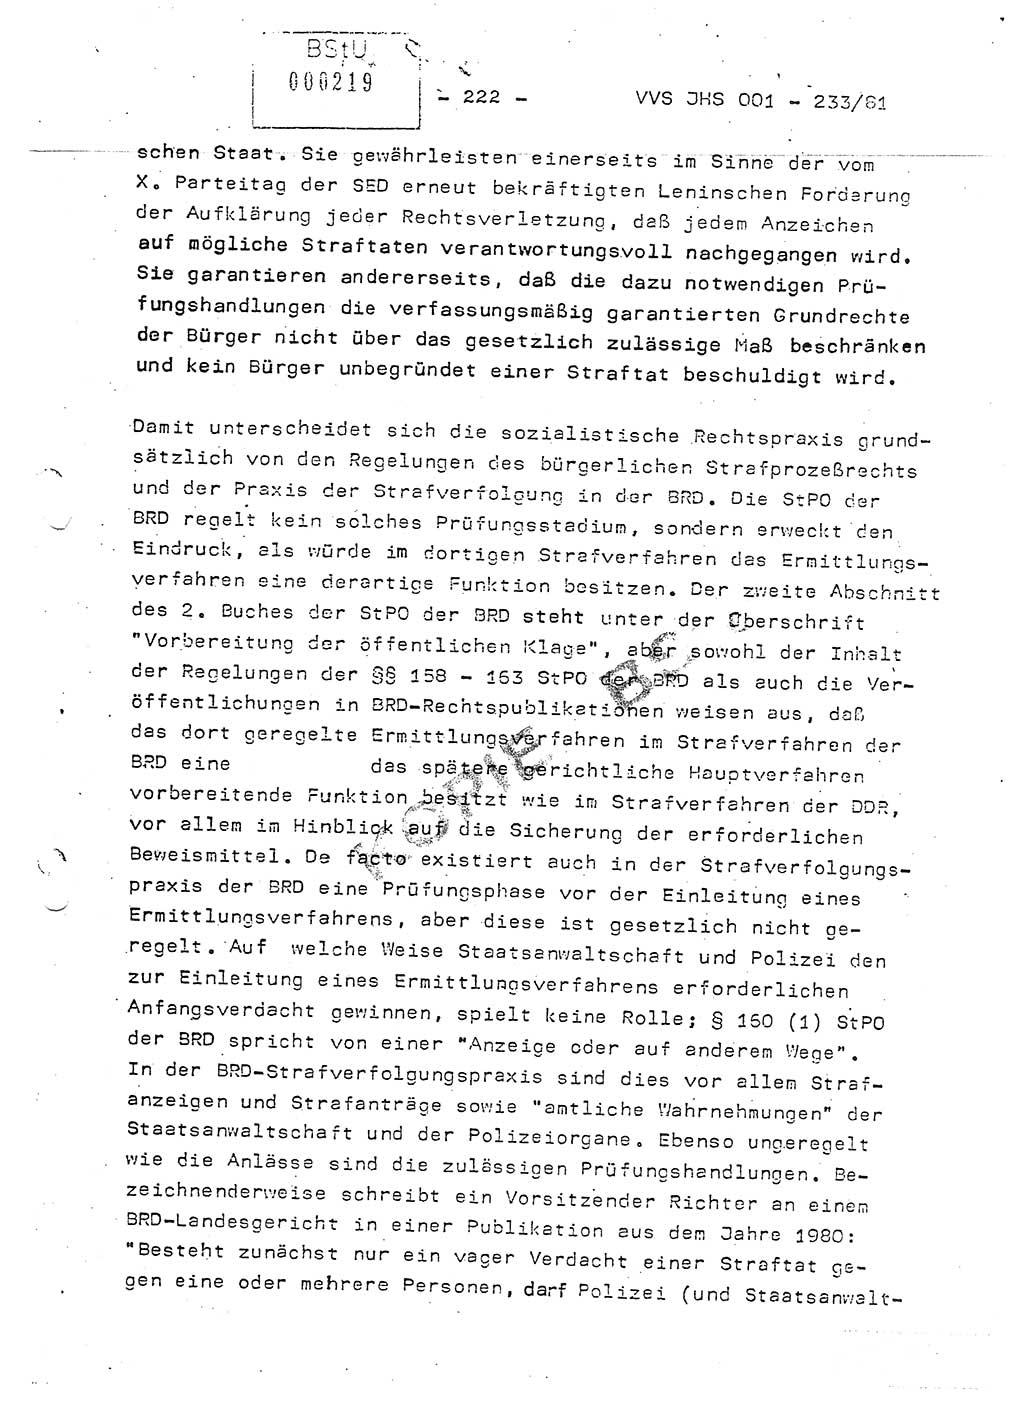 Dissertation Oberstleutnant Horst Zank (JHS), Oberstleutnant Dr. Karl-Heinz Knoblauch (JHS), Oberstleutnant Gustav-Adolf Kowalewski (HA Ⅸ), Oberstleutnant Wolfgang Plötner (HA Ⅸ), Ministerium für Staatssicherheit (MfS) [Deutsche Demokratische Republik (DDR)], Juristische Hochschule (JHS), Vertrauliche Verschlußsache (VVS) o001-233/81, Potsdam 1981, Blatt 222 (Diss. MfS DDR JHS VVS o001-233/81 1981, Bl. 222)